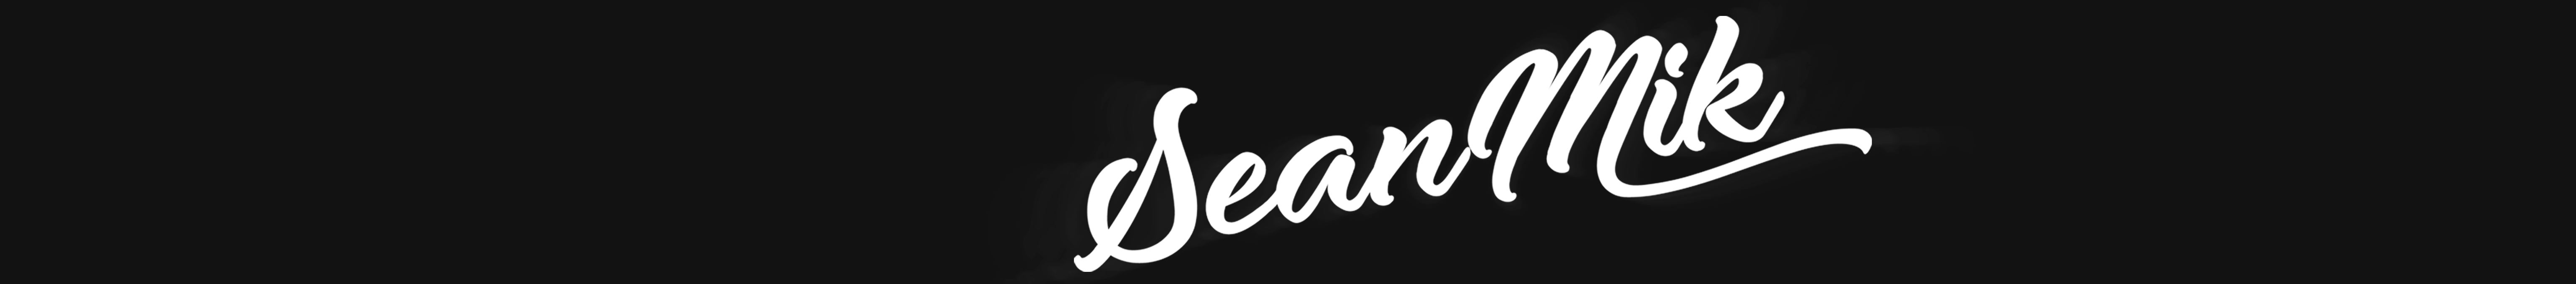 Profil-Banner von SEANMIK DESIGN